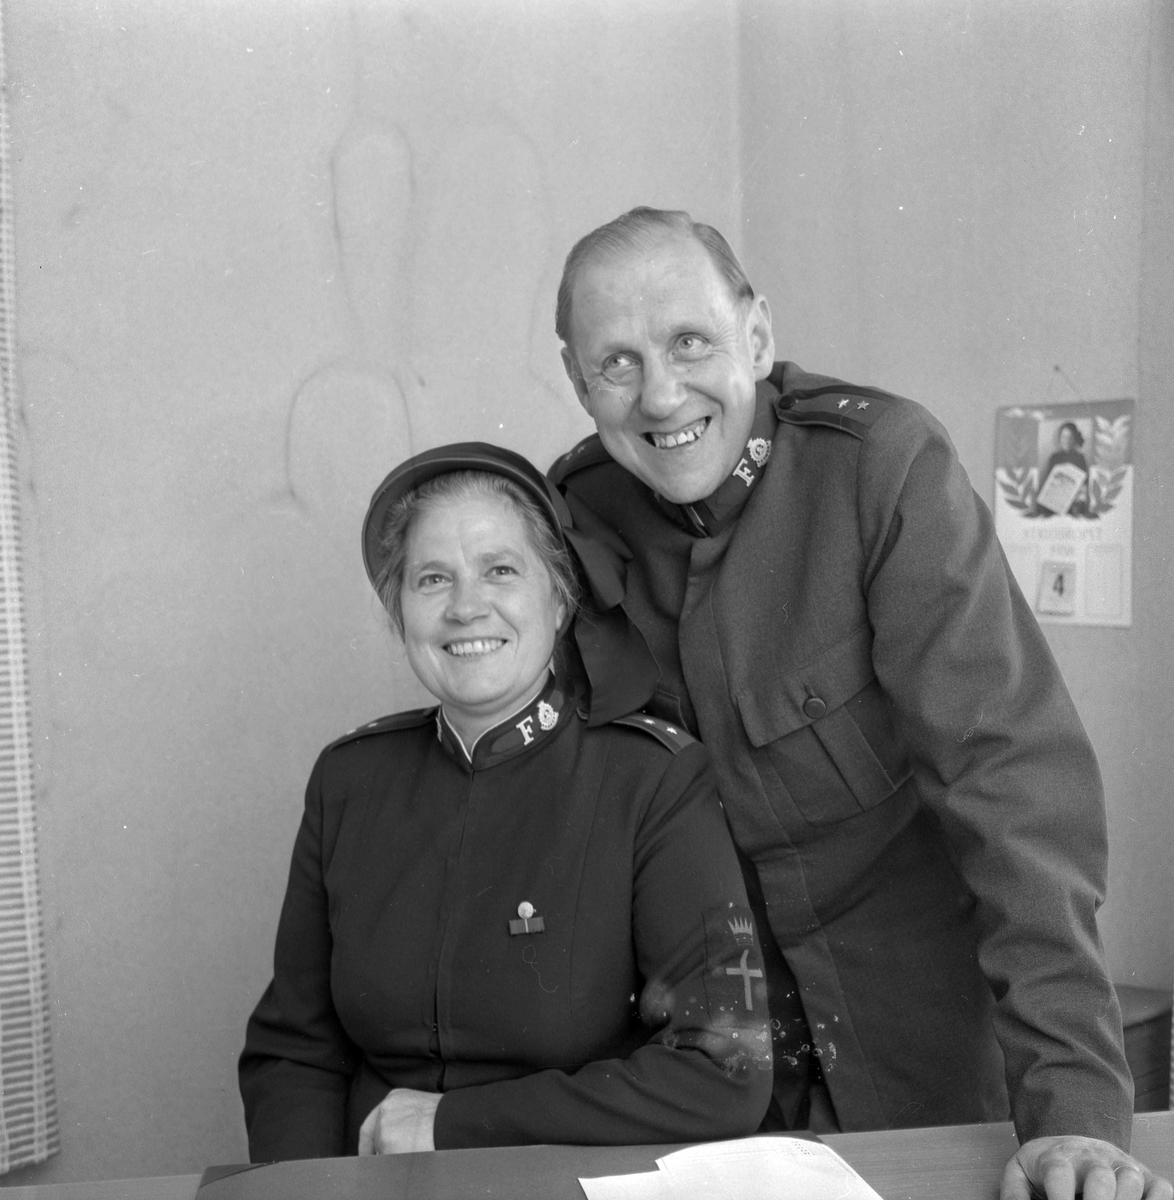 Ny brigadör på Frälsningsarmén. Brigadör Erik Håkanson med hustru Edith, nyblivna divisionschefer i Örebro division. 
5 september 1958.